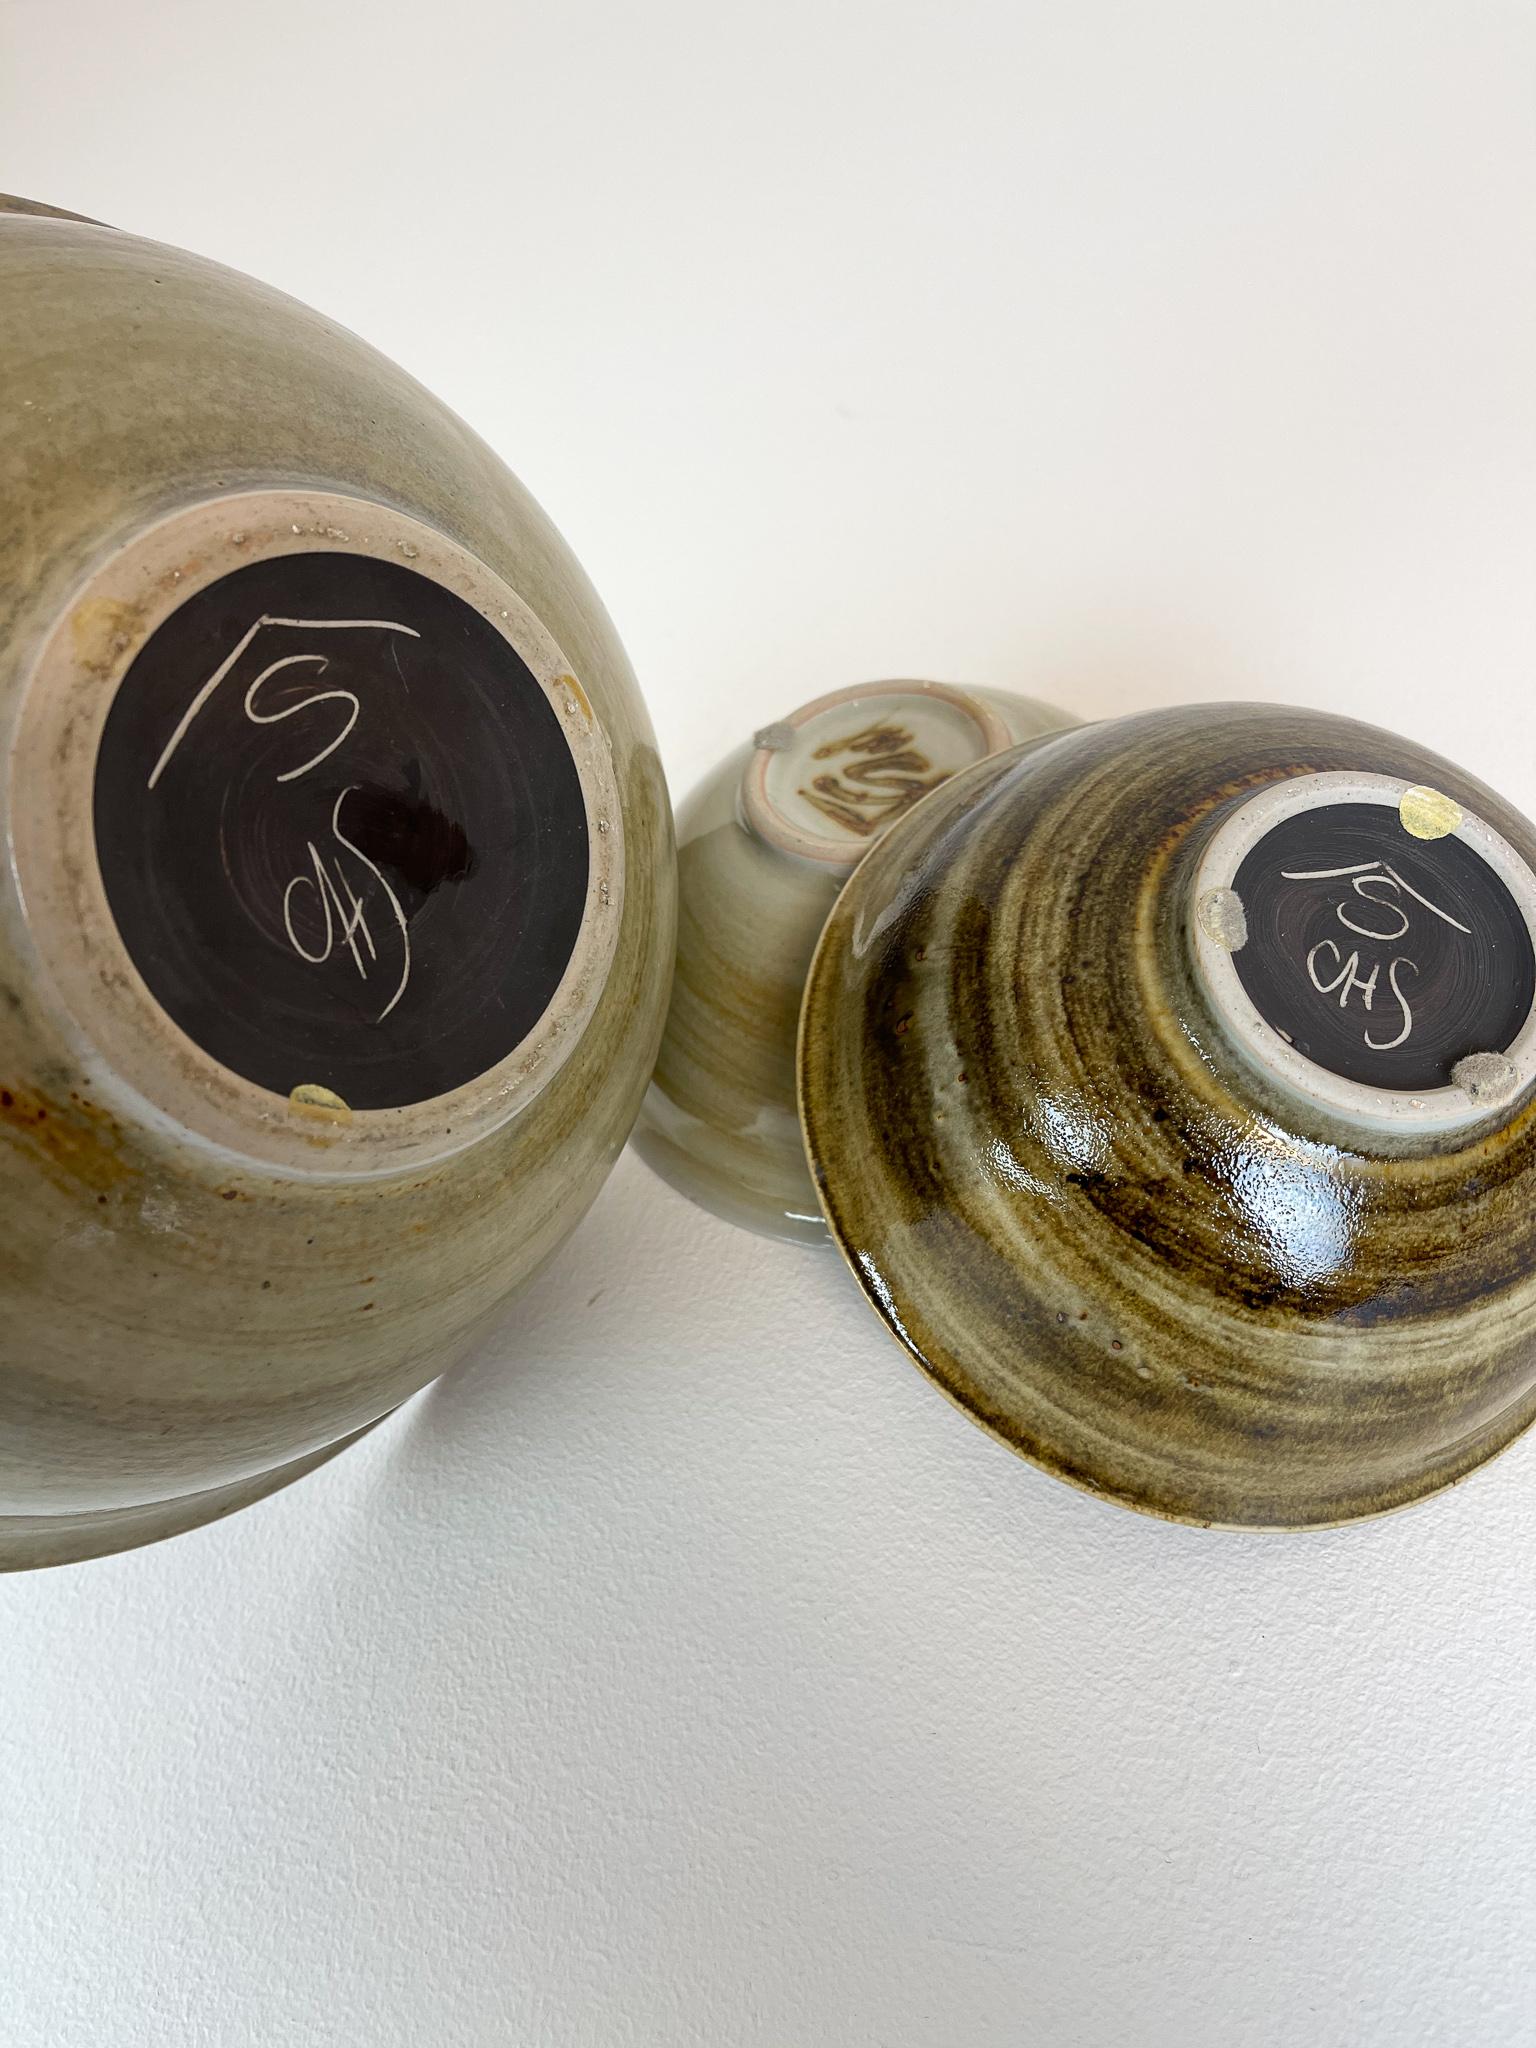 Scandinavian Modern Ceramic Bowls by Carl-Harry Stålhane Design Huset, Sweden For Sale 7